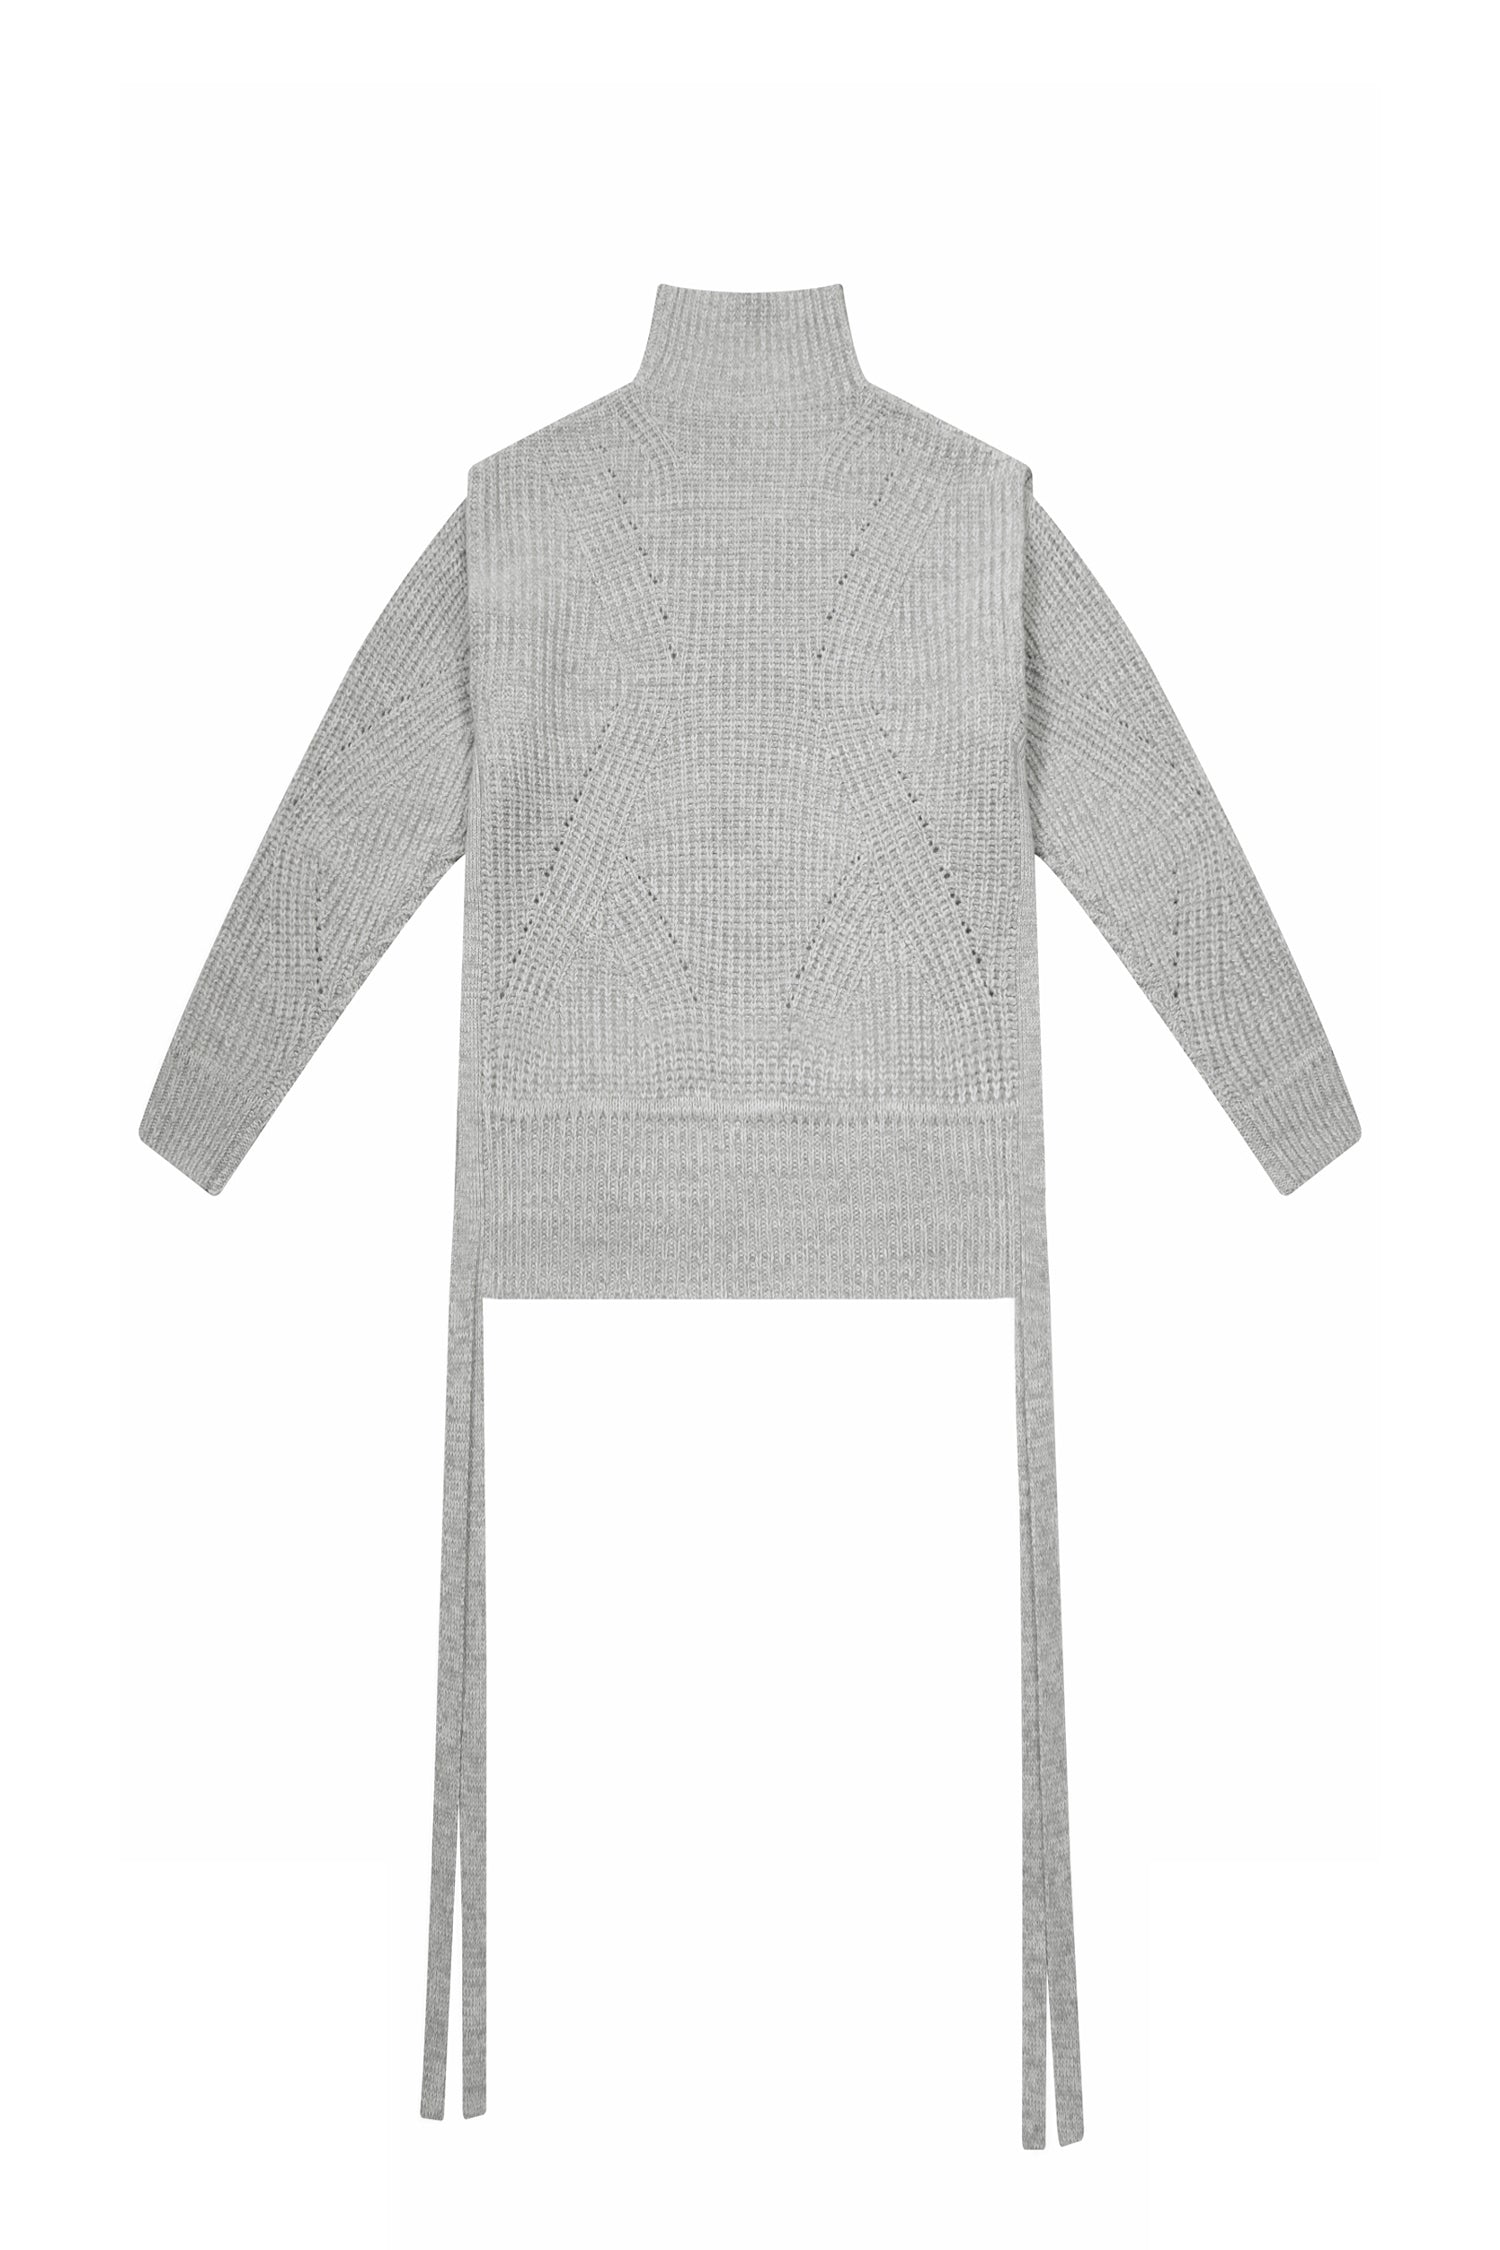 Scorpio Funnel Neck Convertible Sweater